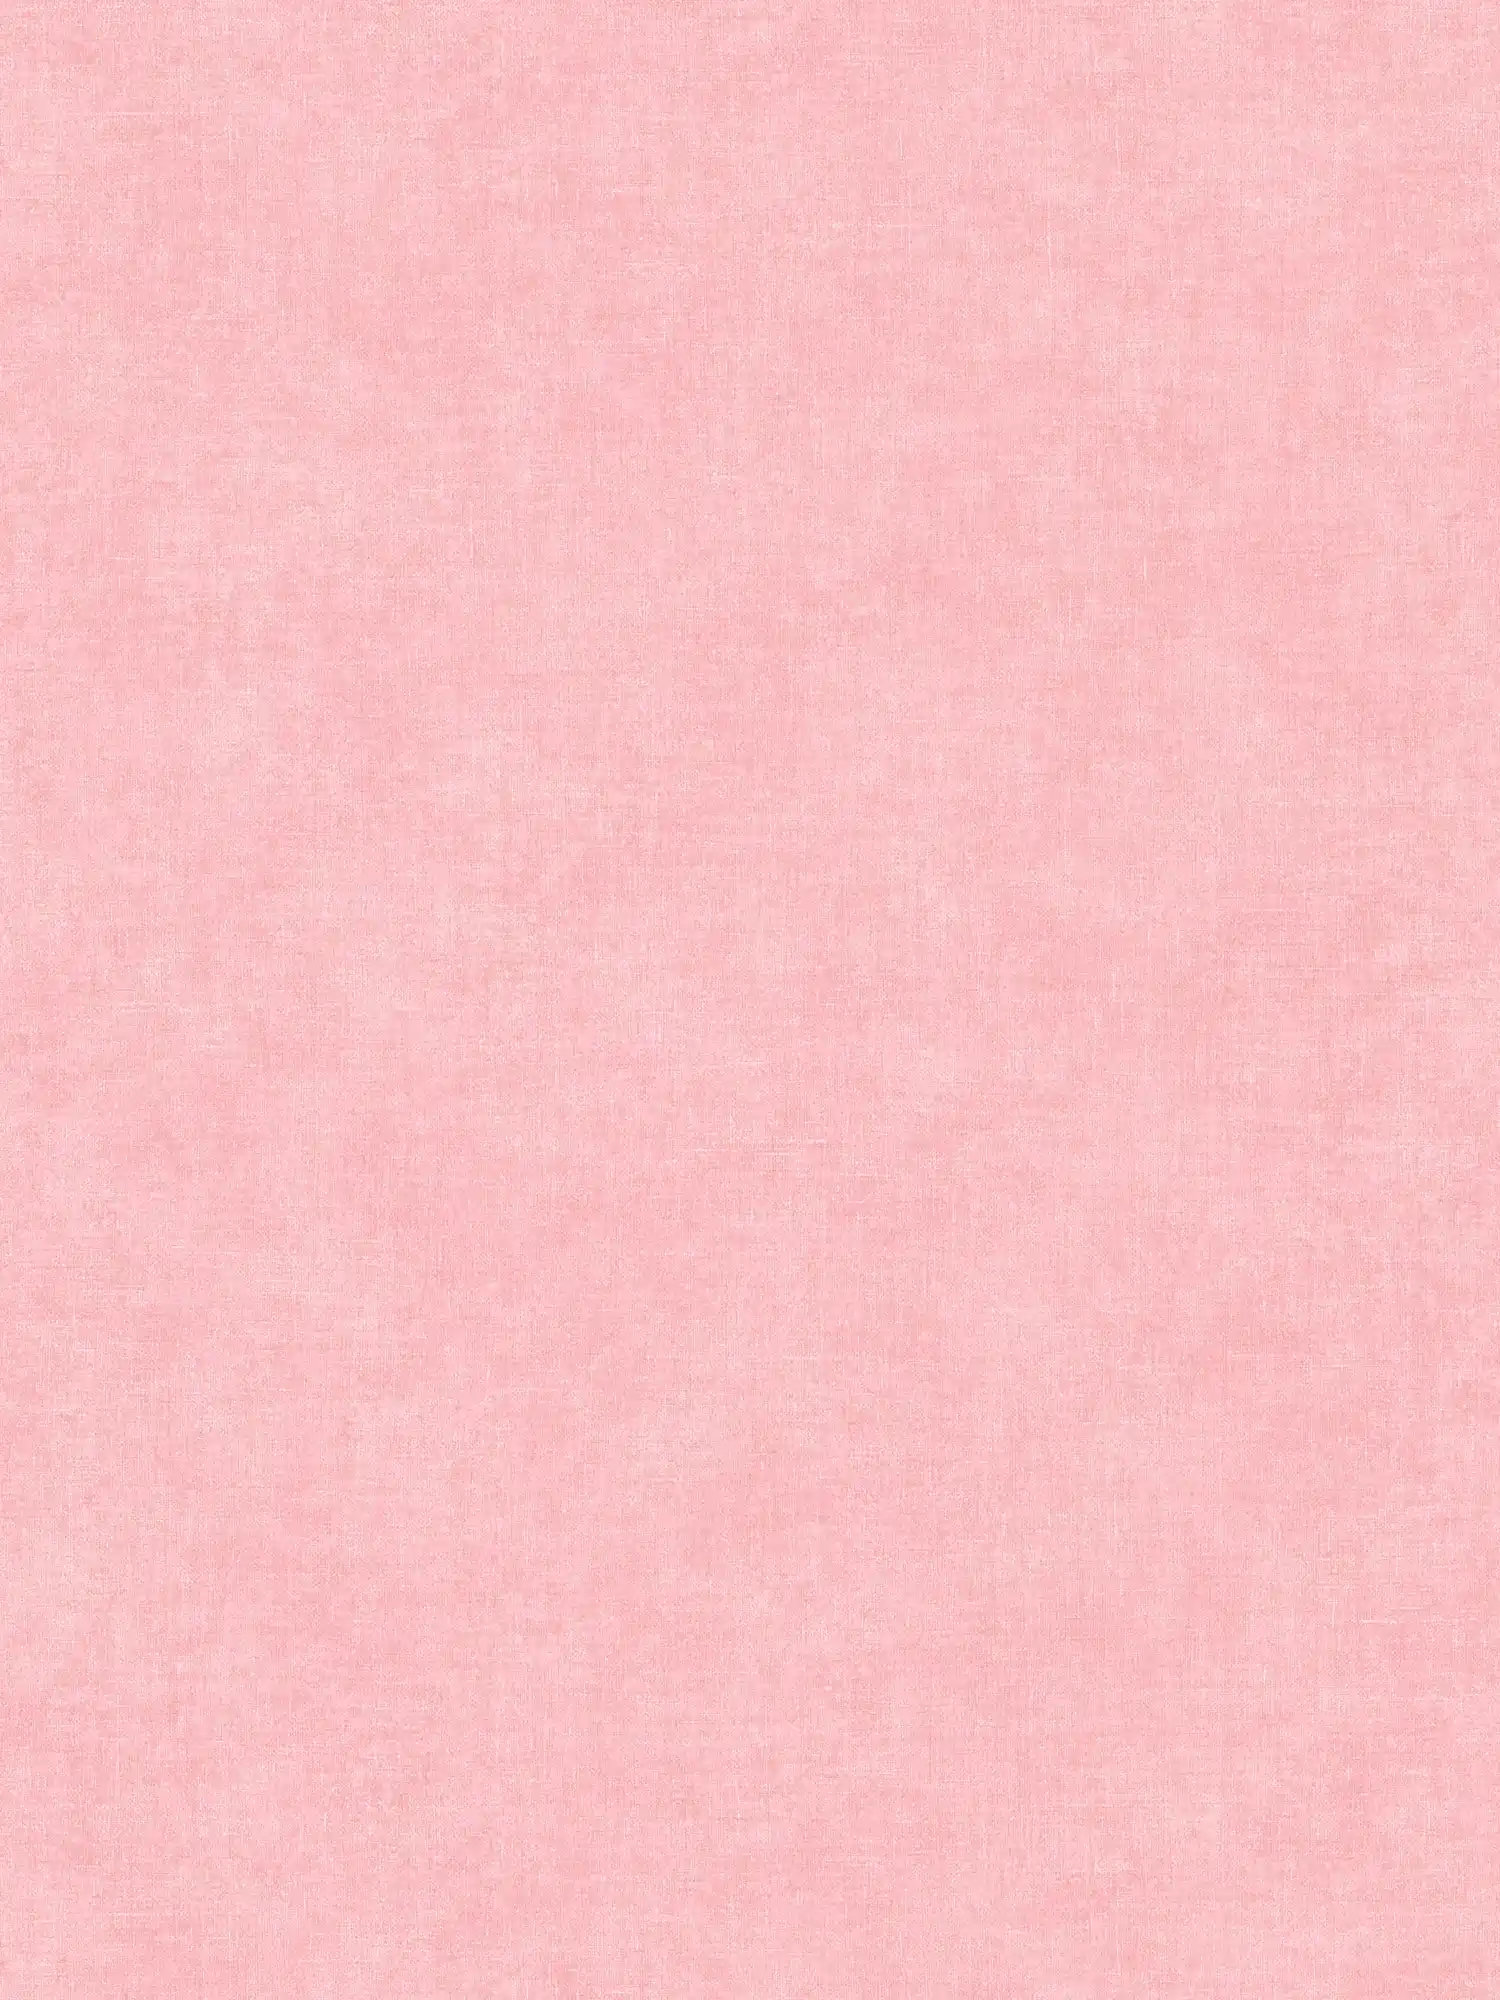 Roze behang effen & mat met structuurpatroon
